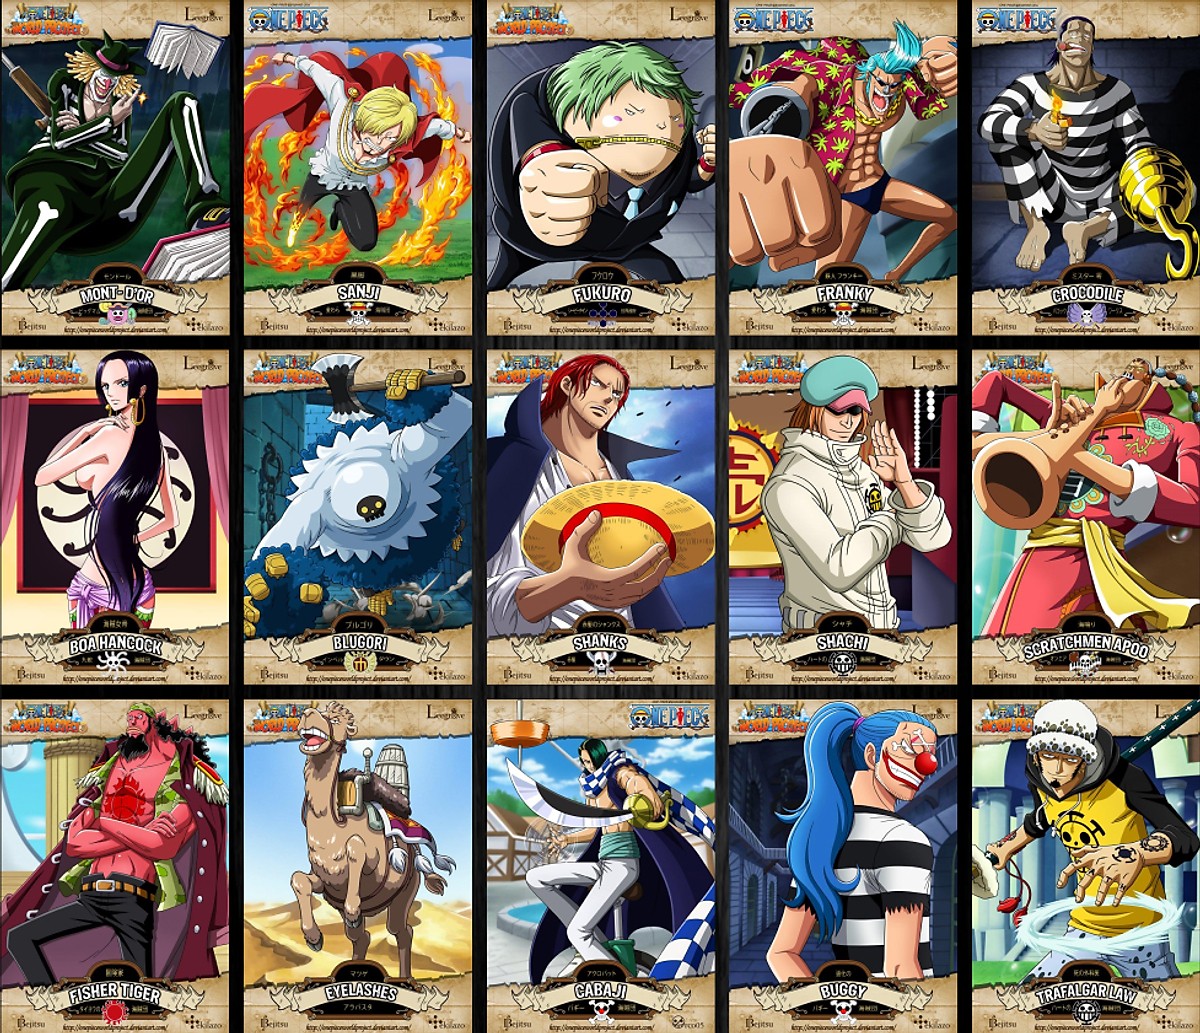 Combo 10 Tờ truy nã - Wanted Poster nhân vật One Piece World Project - Khổ lớn 28.7cm x 40.6cm